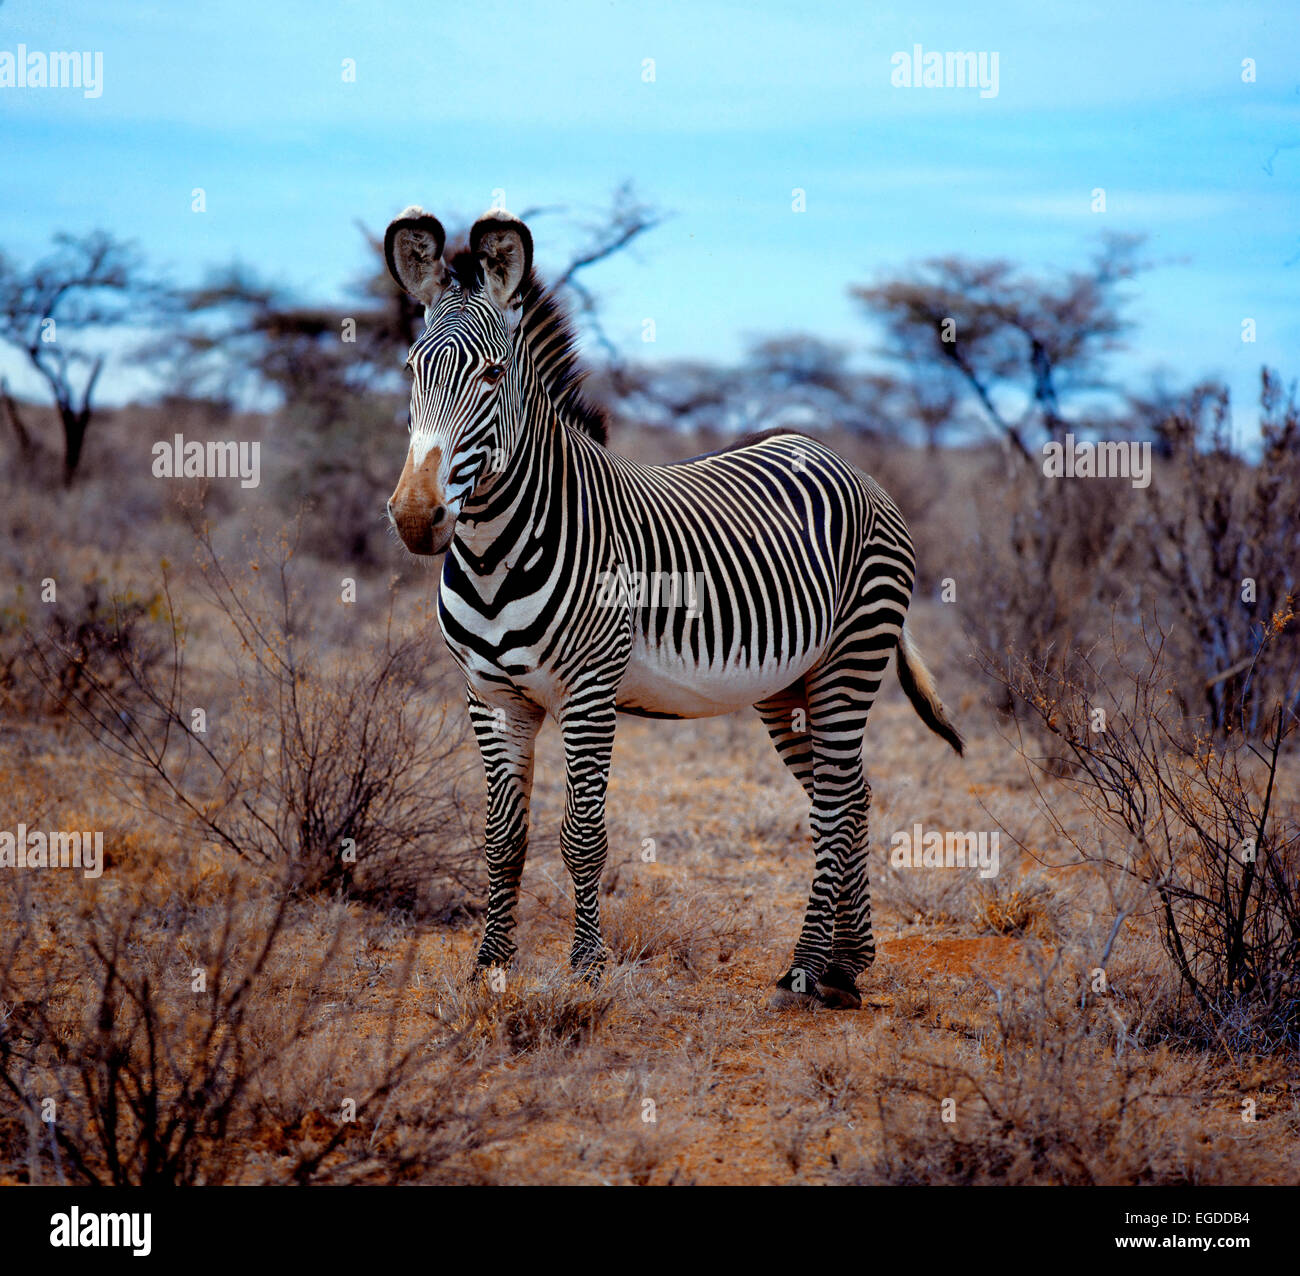 Grevy's Zebra (Equus grevyi) in thorny dry bush Stock Photo